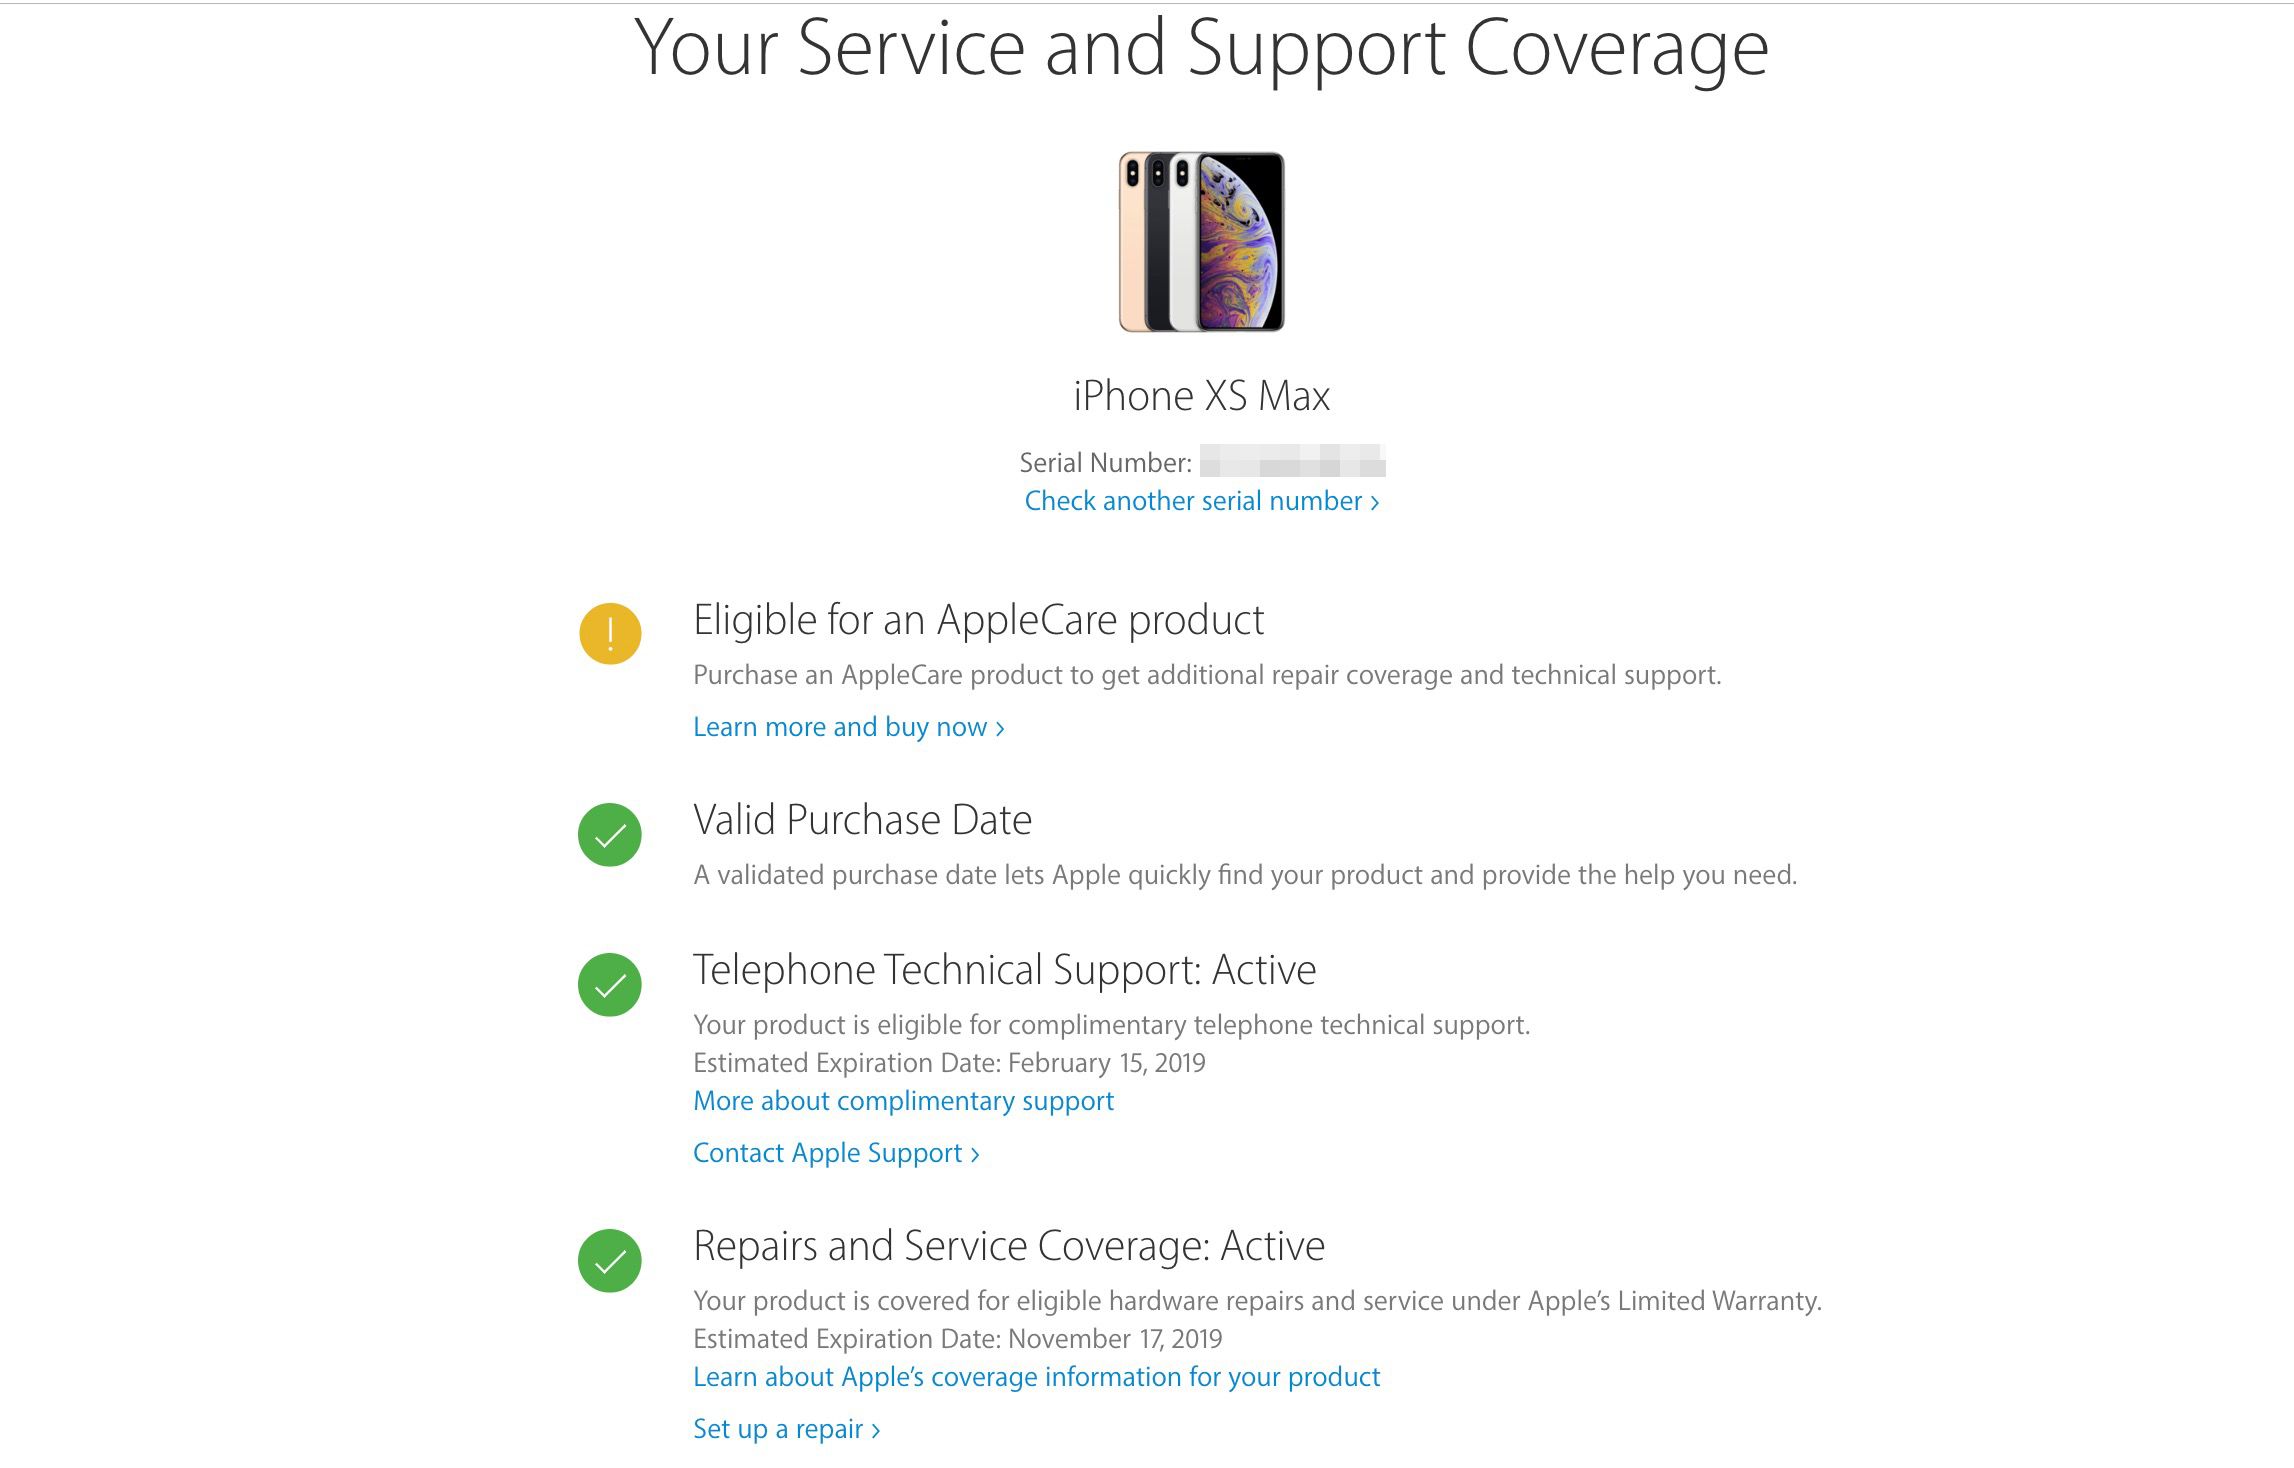 Página de resumo de cobertura de serviço e suporte no site da Apple